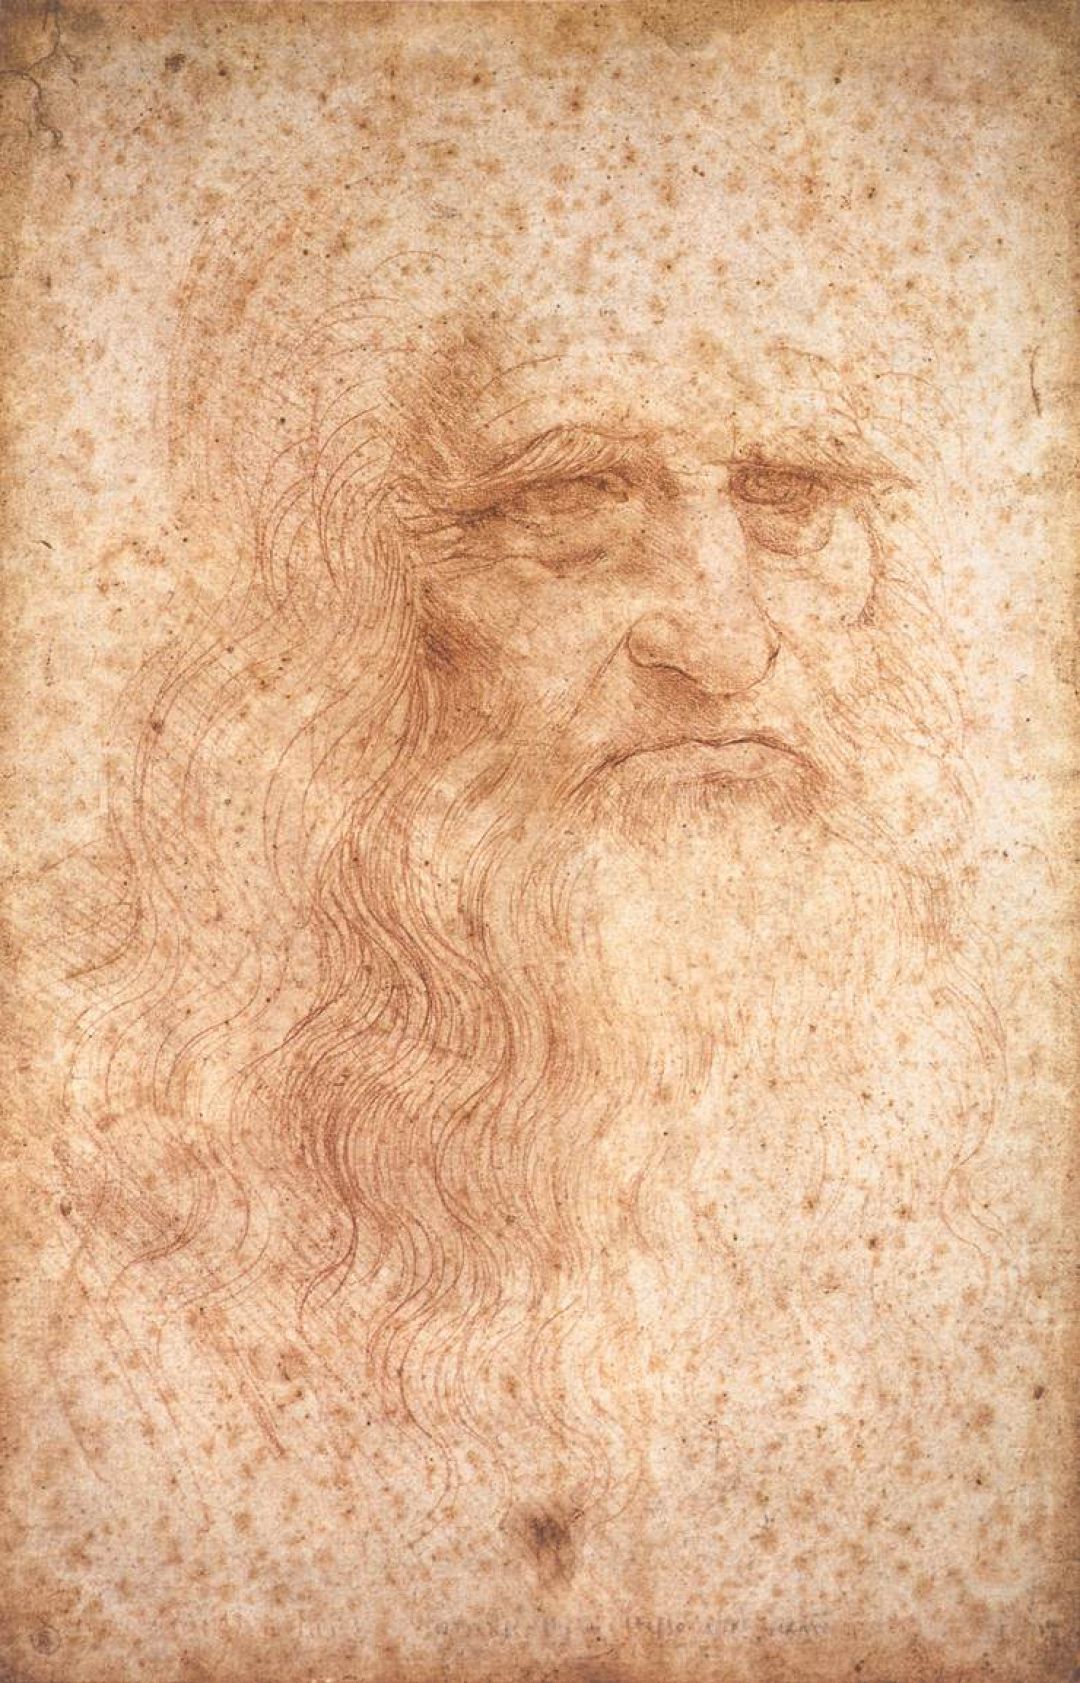 Leonardo Da Vinci - Leonardo Da Vinci Alien Drawing - HD Wallpaper 